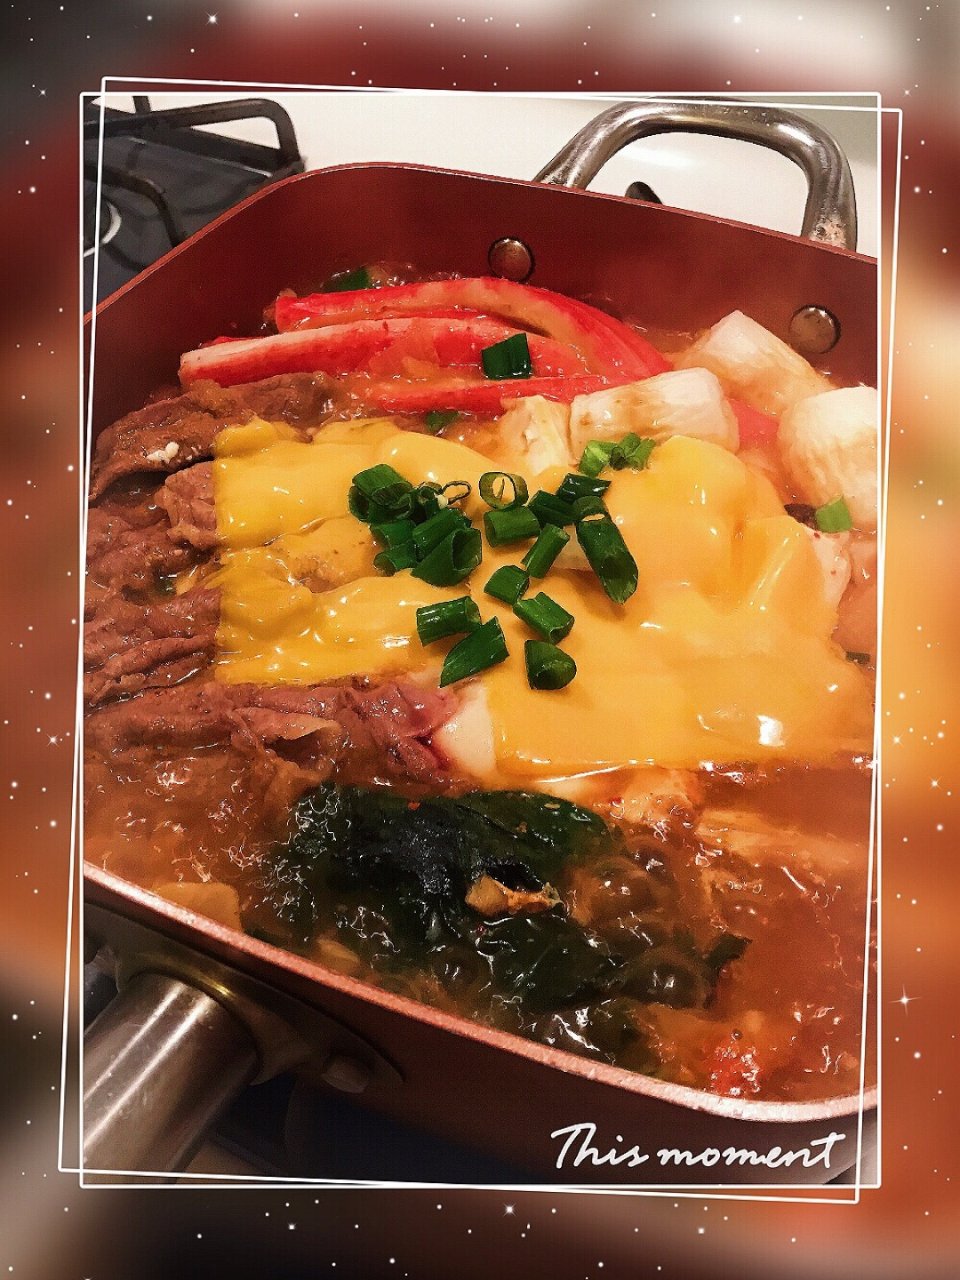 韩式部队锅,超好吃,蟹肉棒,葱花,起司,自己动手 丰衣足食,美食美味,变成更好的自己